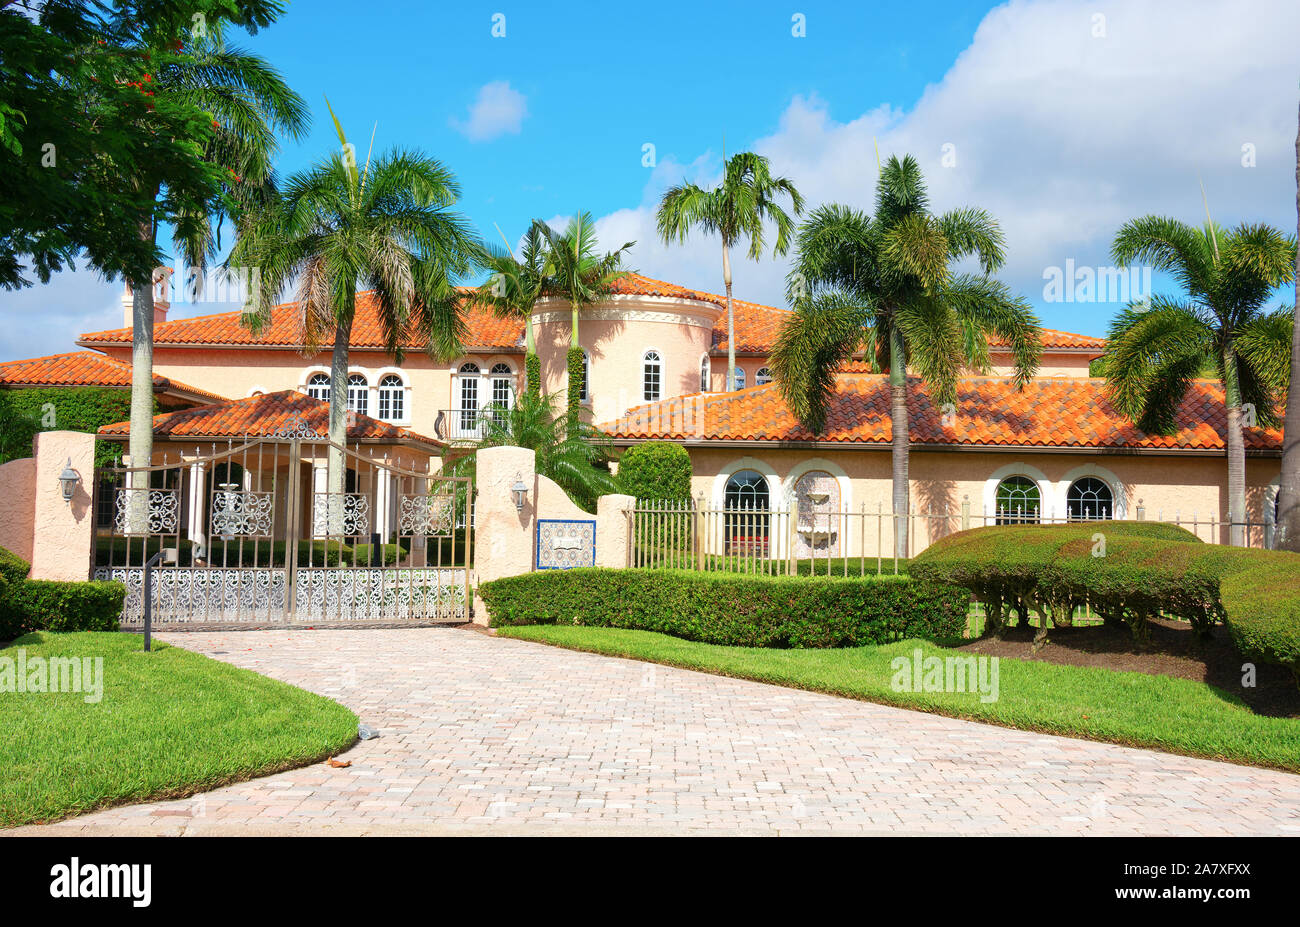 Belle maison de luxe de style espagnol accueil résidentiel avec une porte de la vie privée et de palmiers sur un ciel bleu matin ensoleillé. Banque D'Images